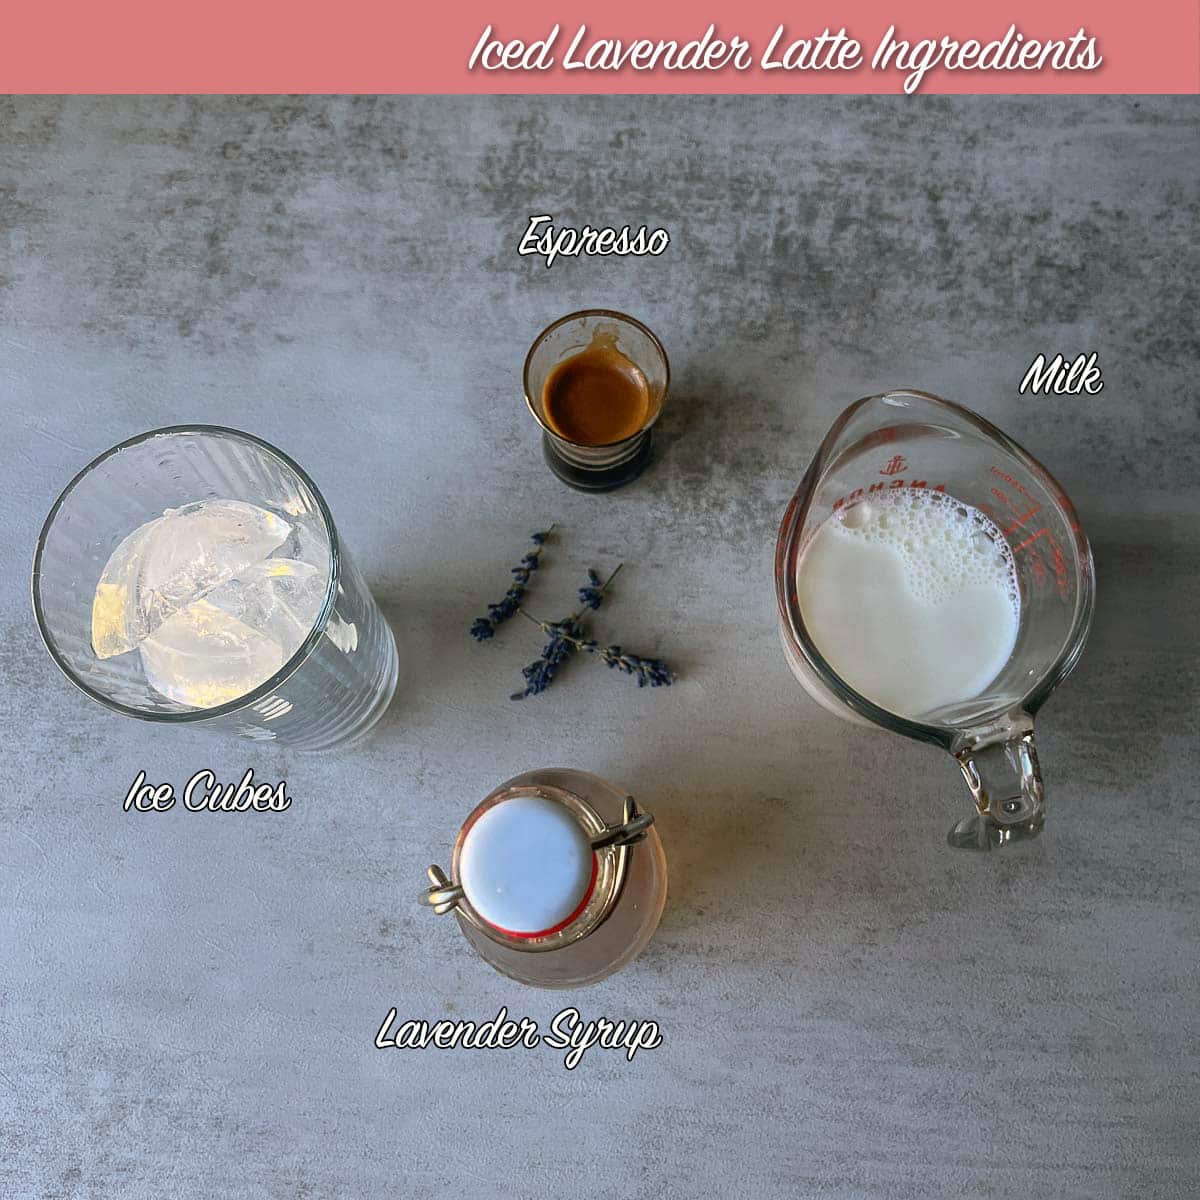 iced lavender latte ingredients